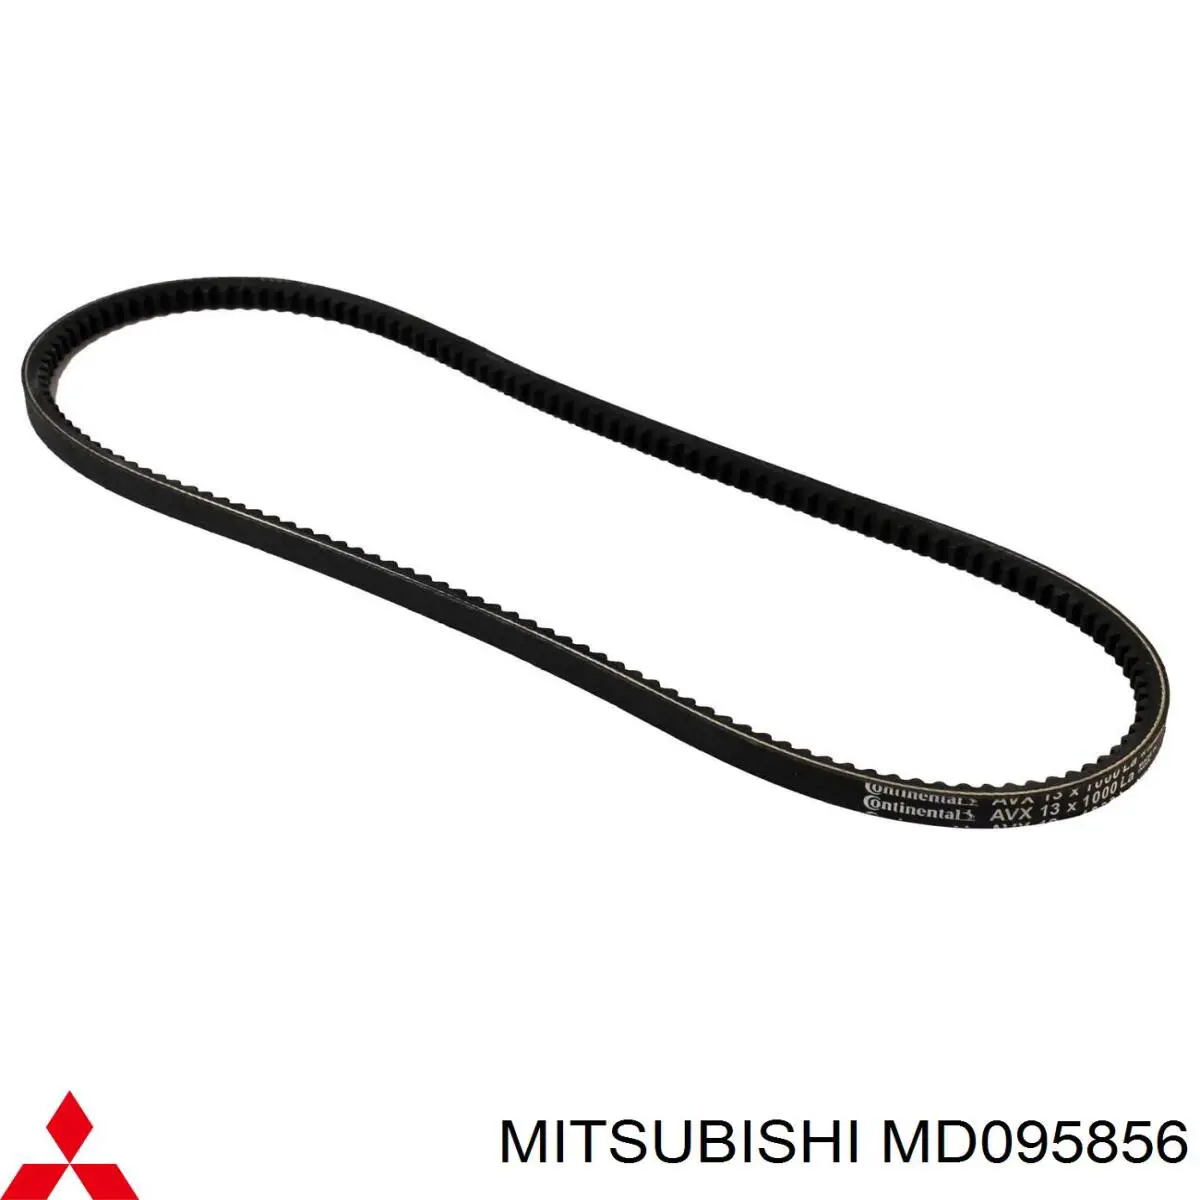 MD095856 Mitsubishi